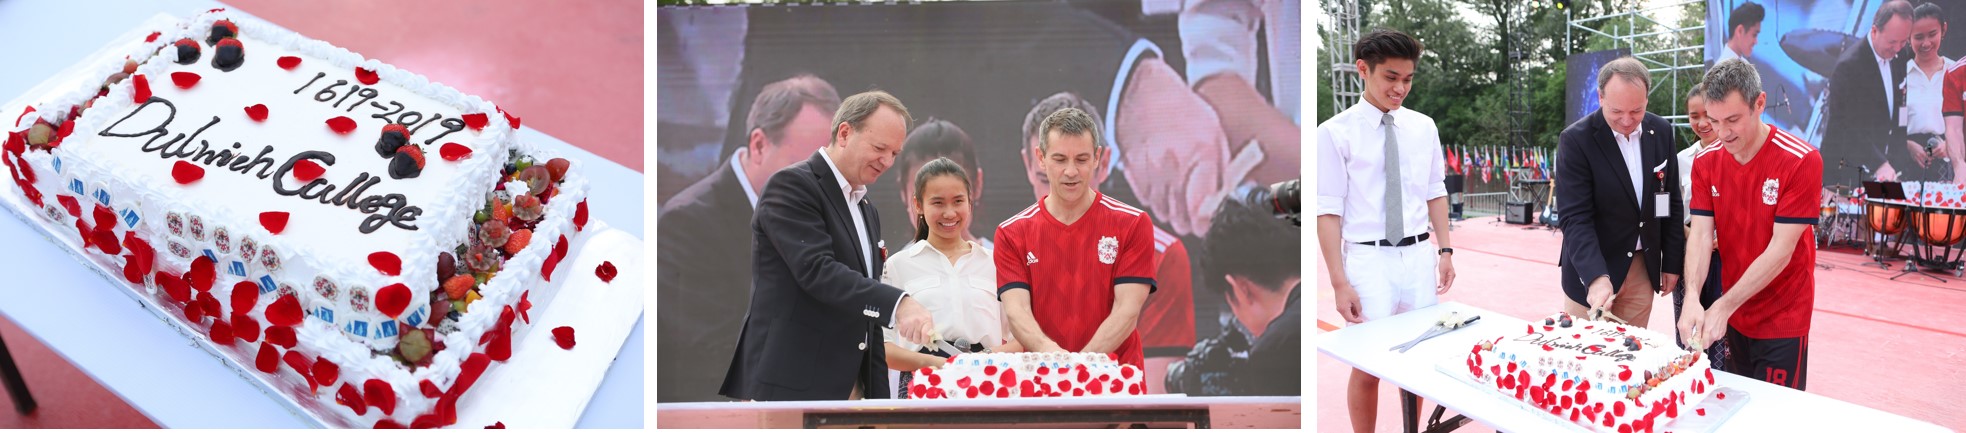 2019年北京德威创建日切蛋糕环节